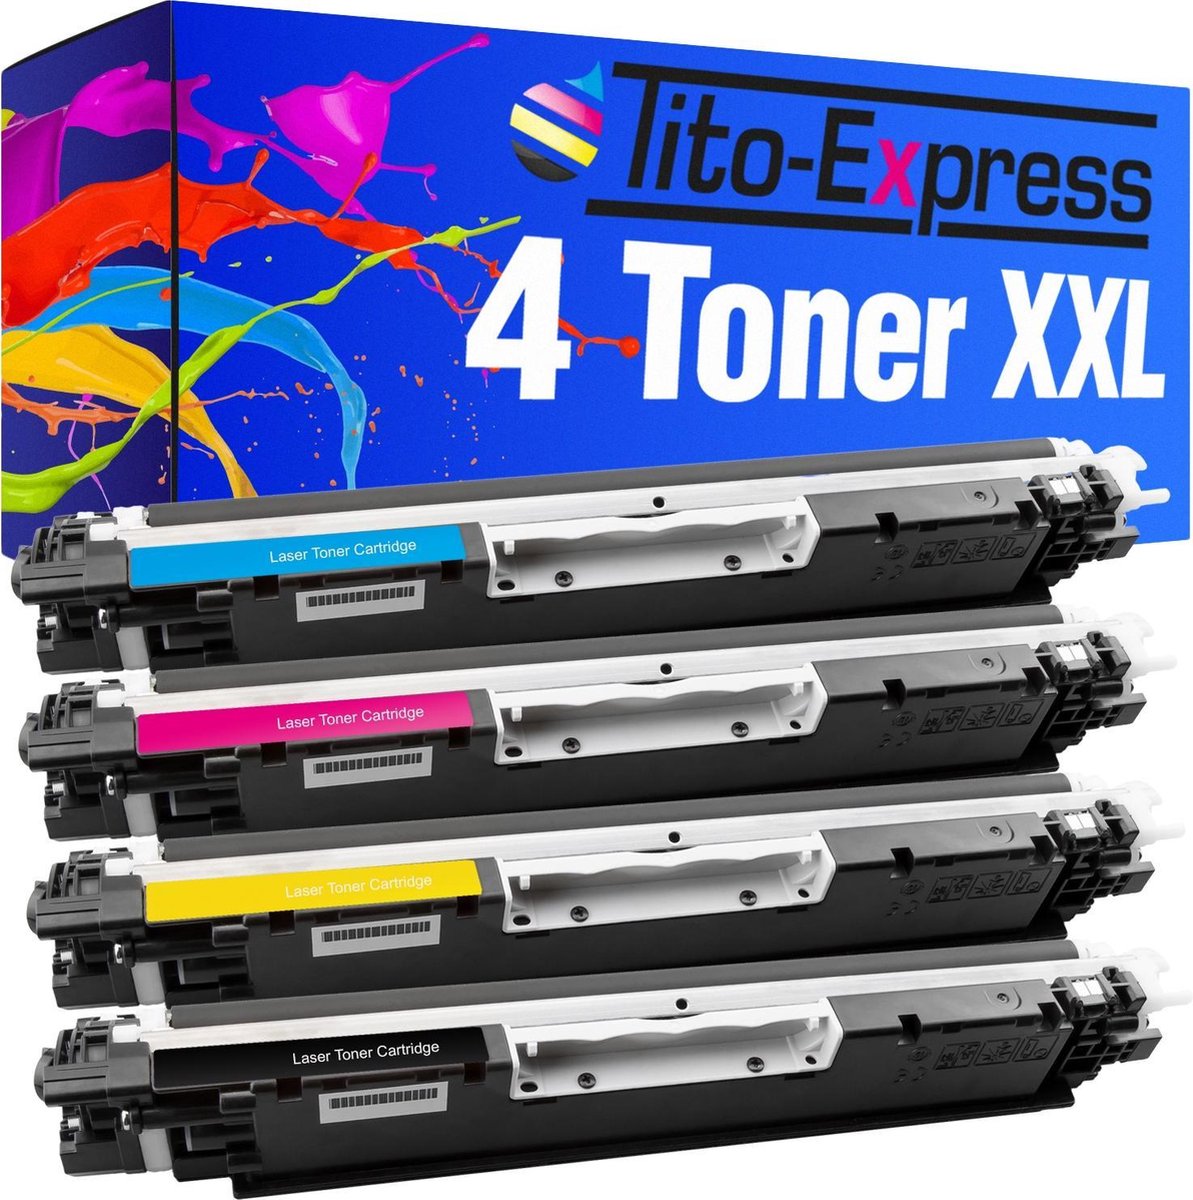 PlatinumSerie 4x toner cartridge alternatief voor HP CE310A-CE313A